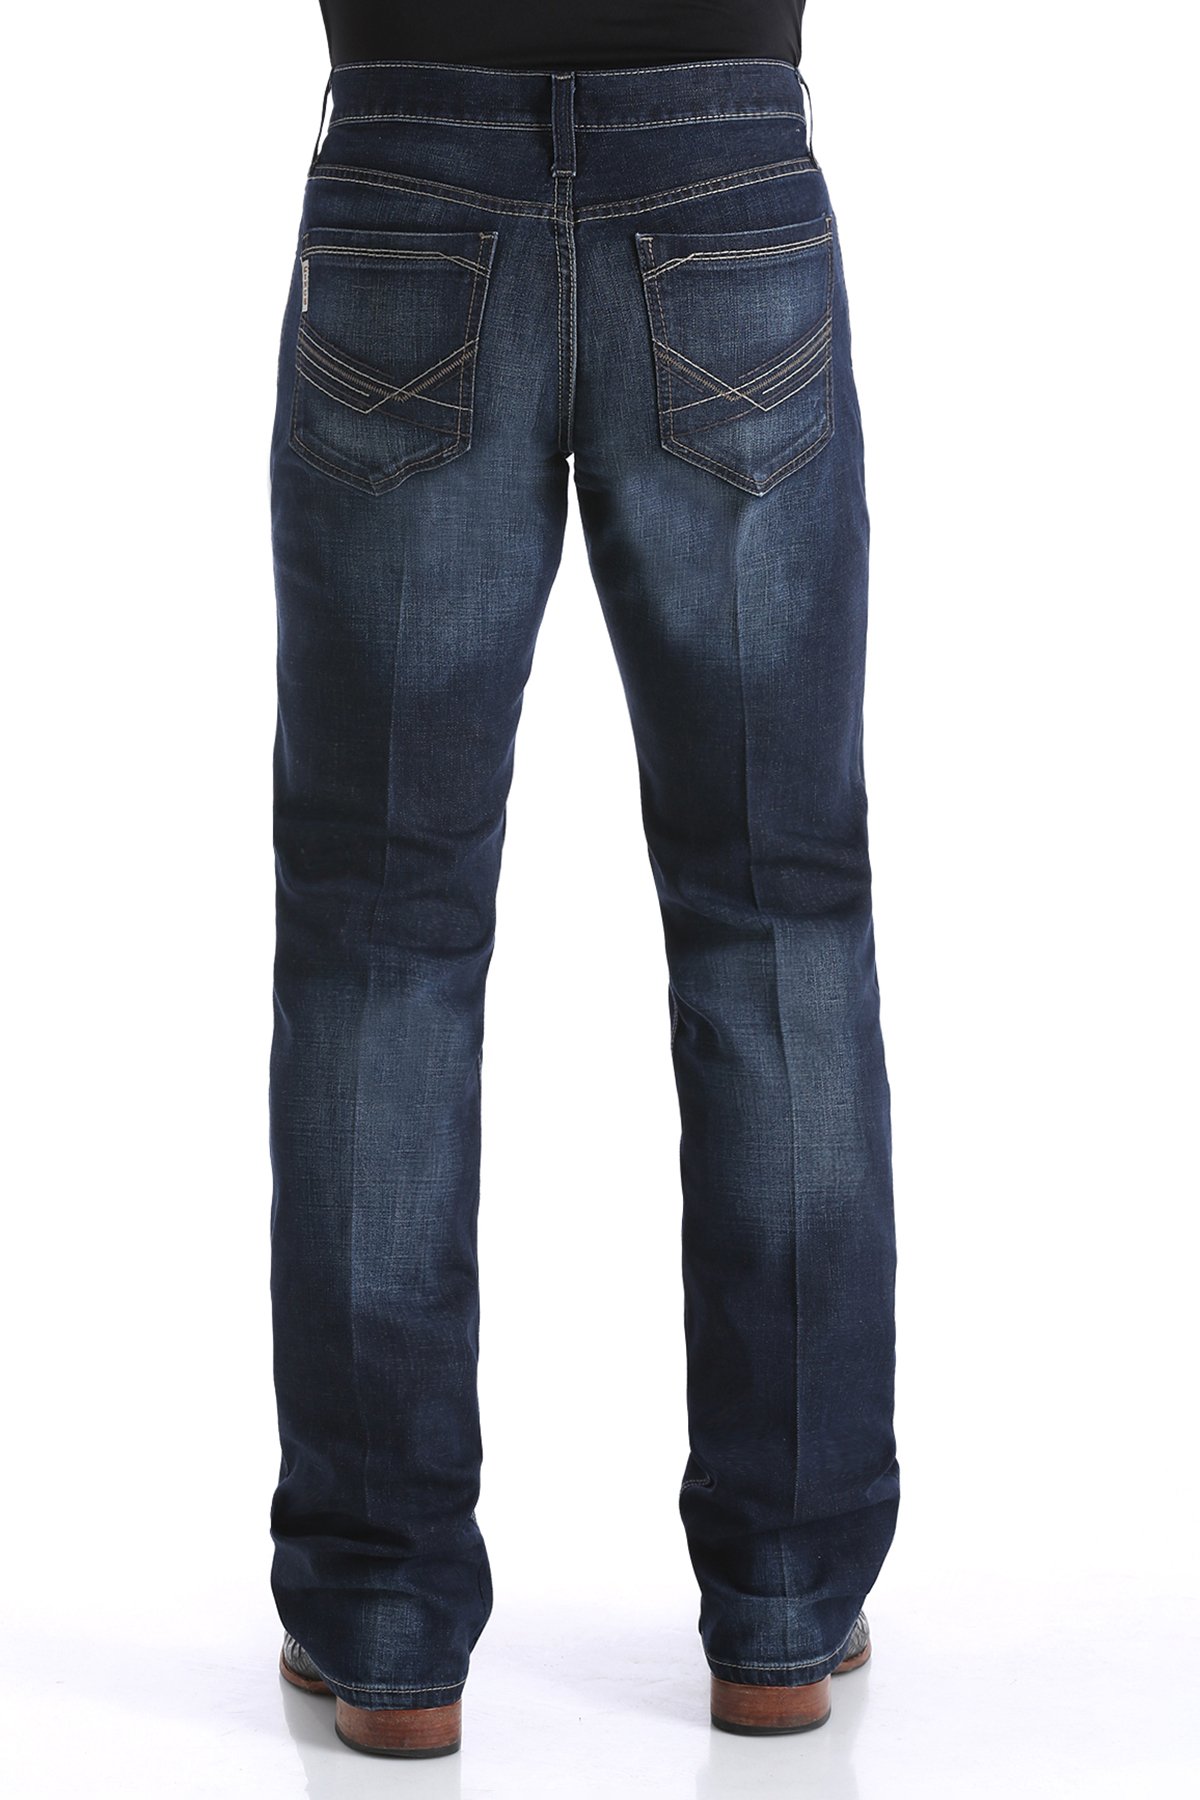 jeans-western-homme-cinch-ian-3